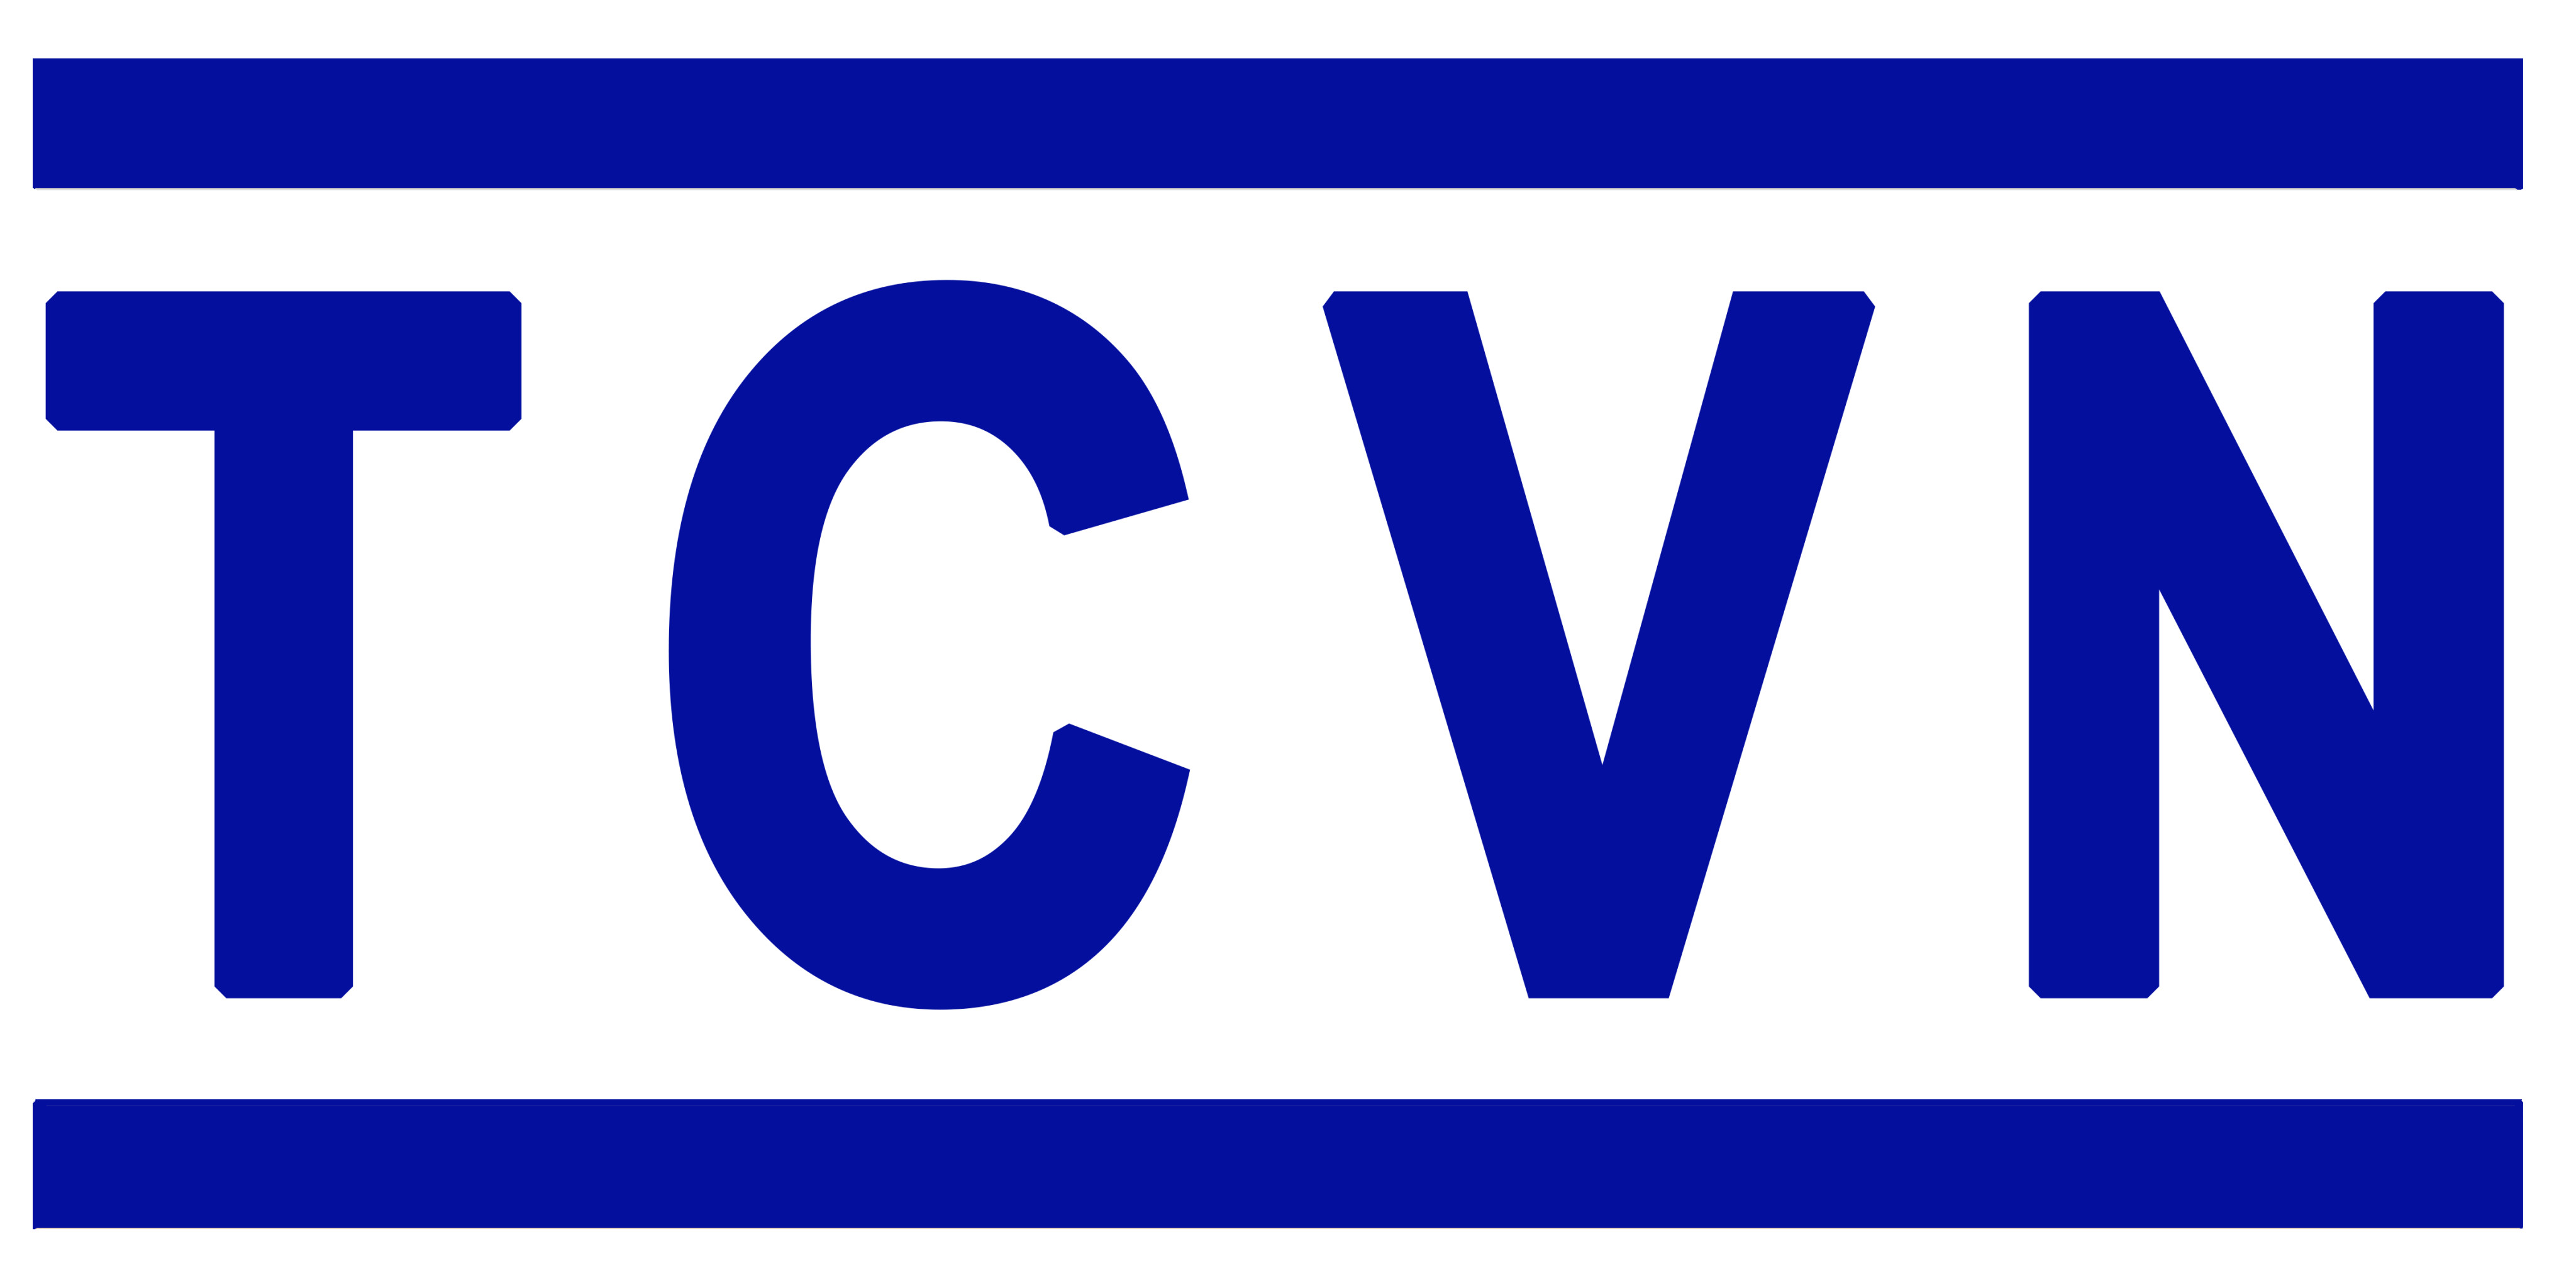 Danh mục tiêu chuẩn Quốc Gia (TCVN) công bố tháng 3 năm 2021